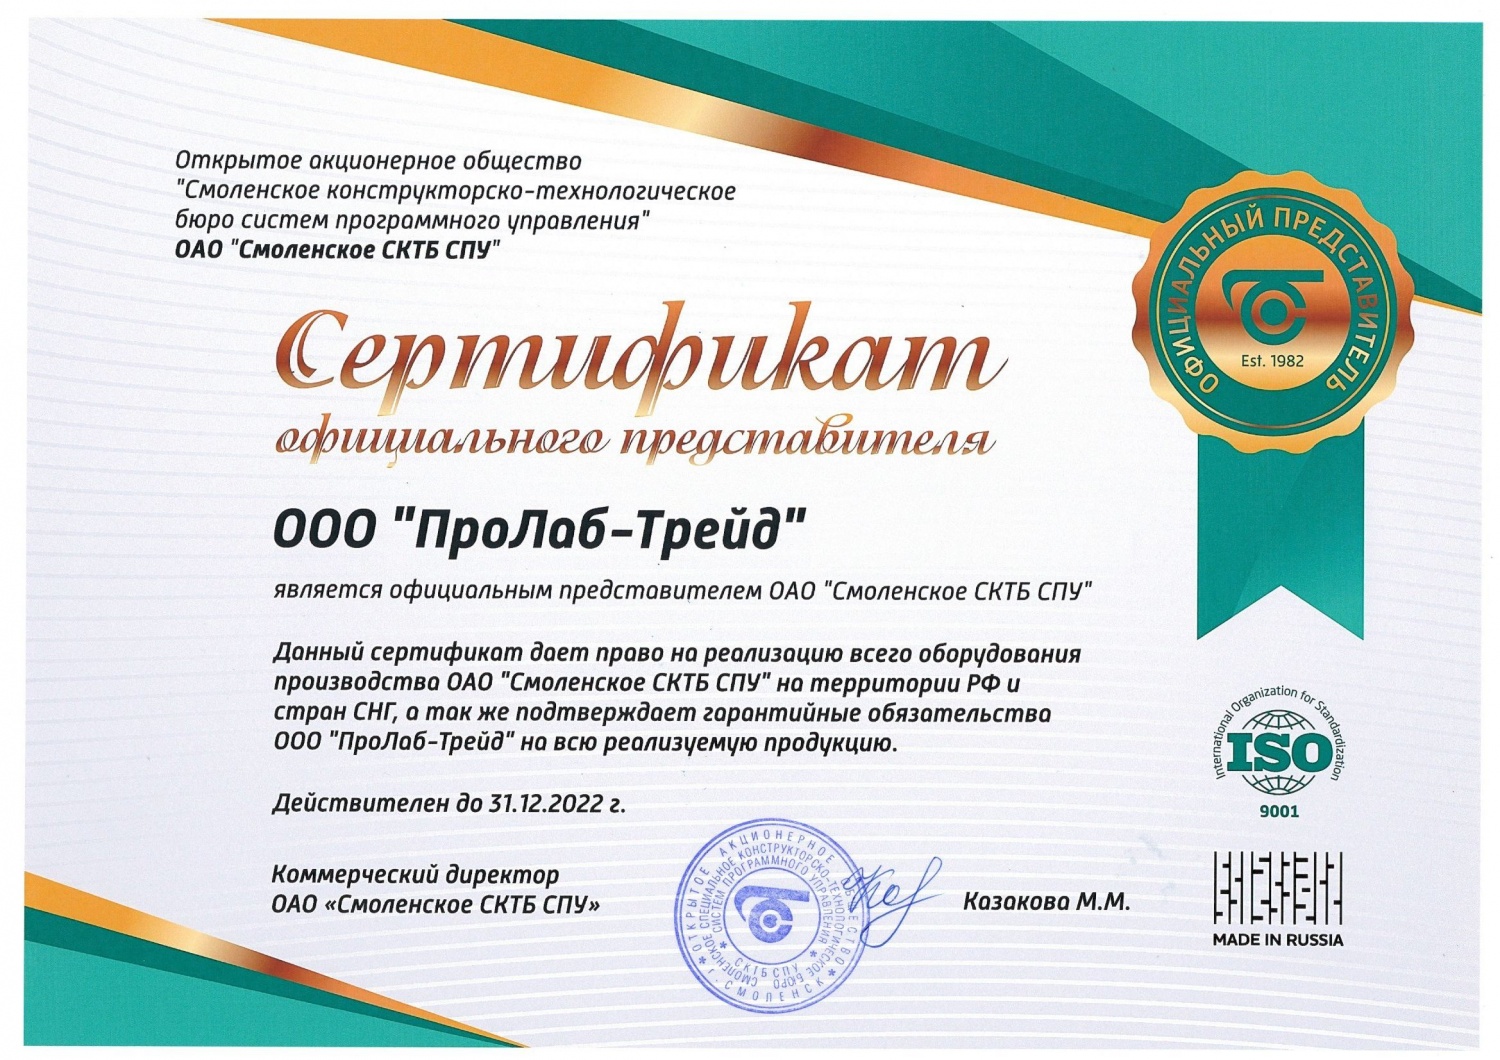 Сертификат официального представителя завода СКТБ СПУ